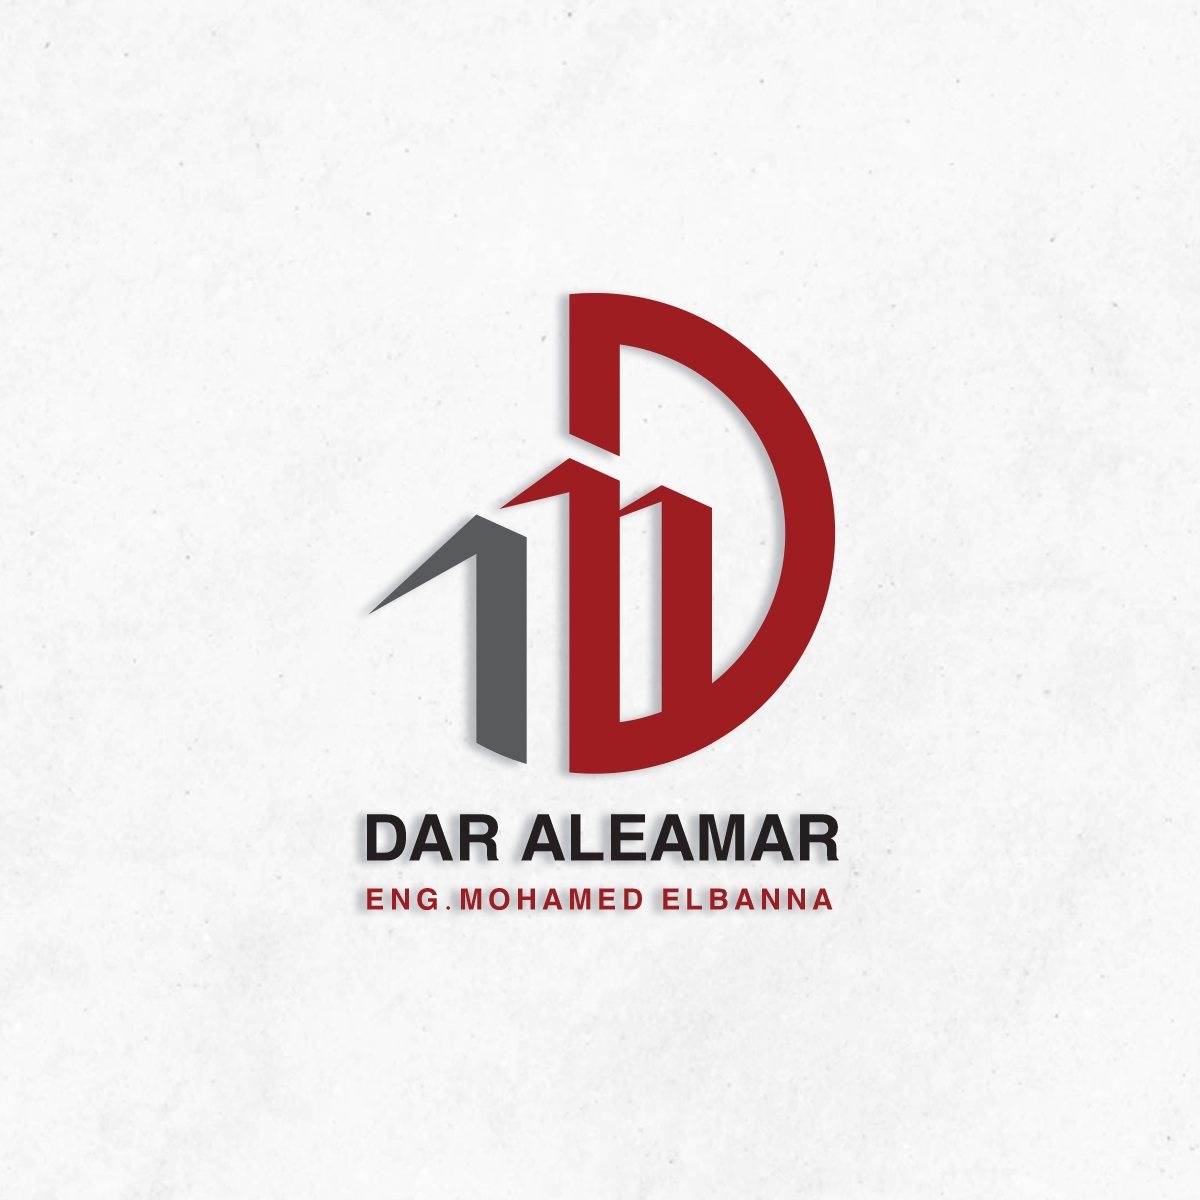 Dar Al-Eamar company